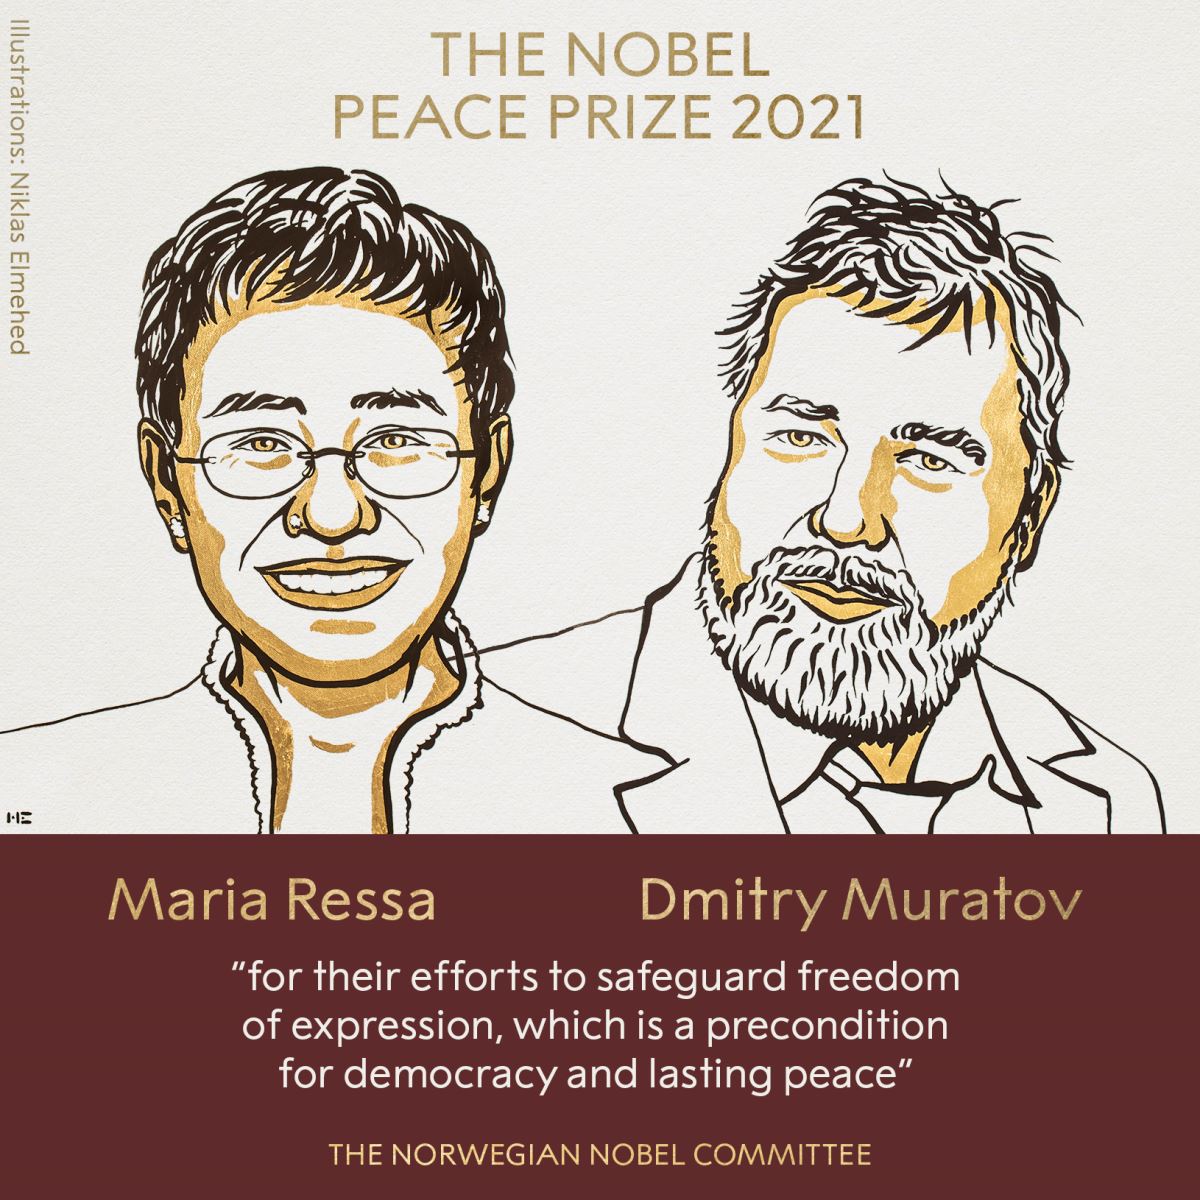 Hai nhà báo từ Philippines và Nga cùng chia sẻ giải Nobel Hòa bình vì những nỗ lực không ngừng cho tự do báo chí